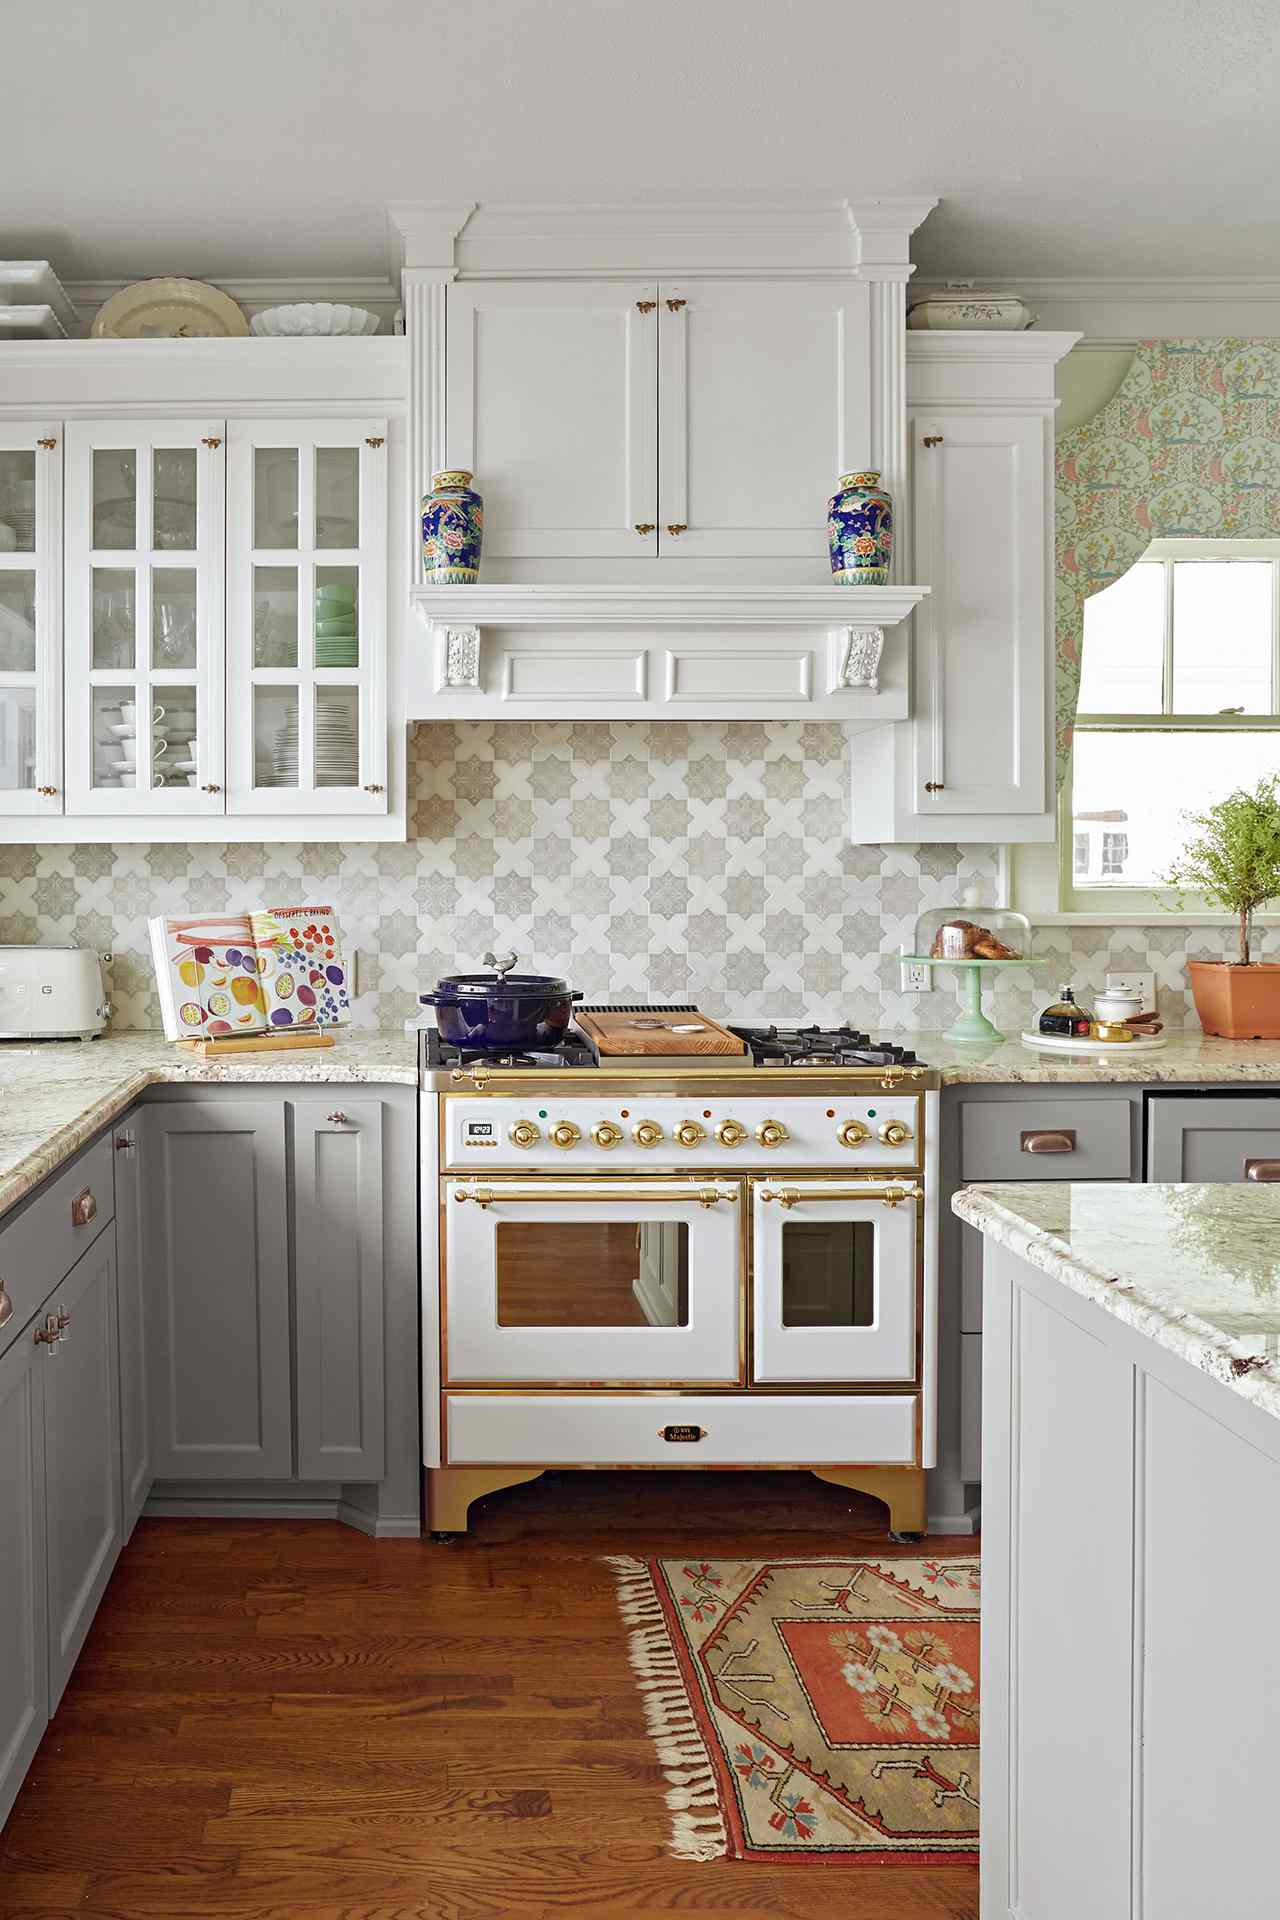 21 Tile Backsplash Ideas For Behind The, Kitchen Tile Backsplashes